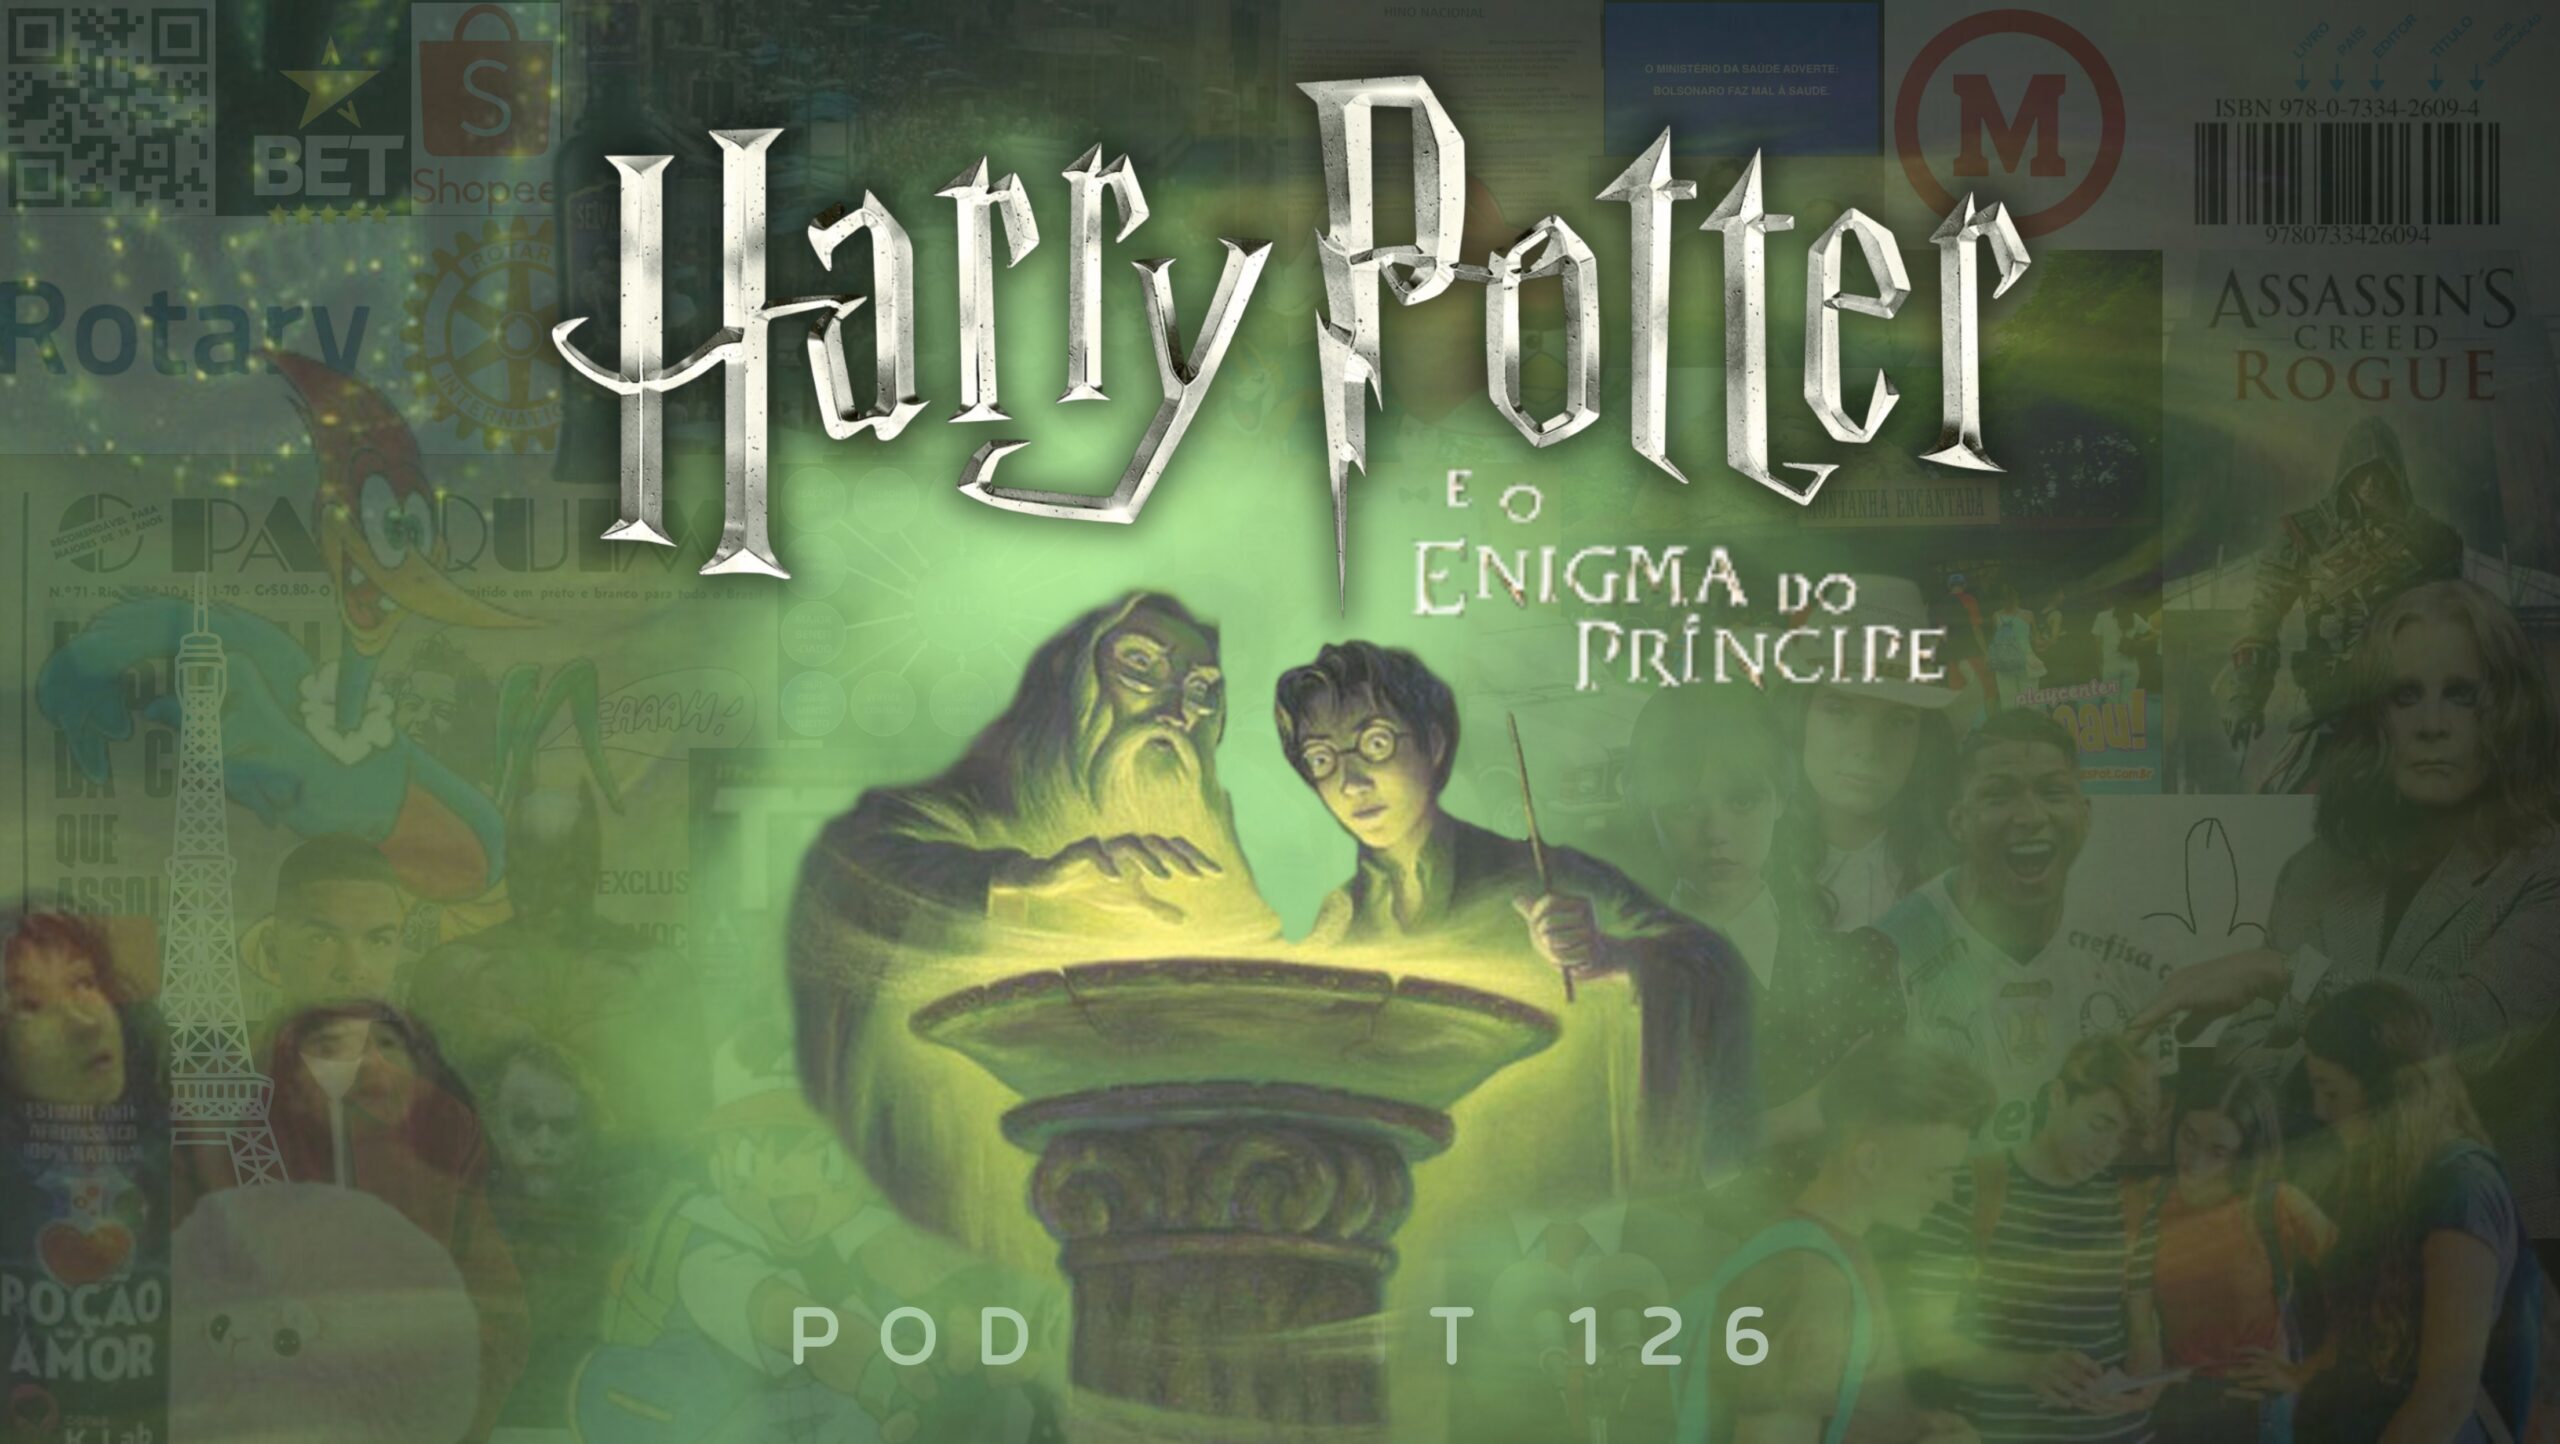 No fundo, imagem em tom esverdeado do personagem Dumbledore ao lado do personagem Harry Potter. Na frente o título "Harry Potter e o Enigma do Príncipe".